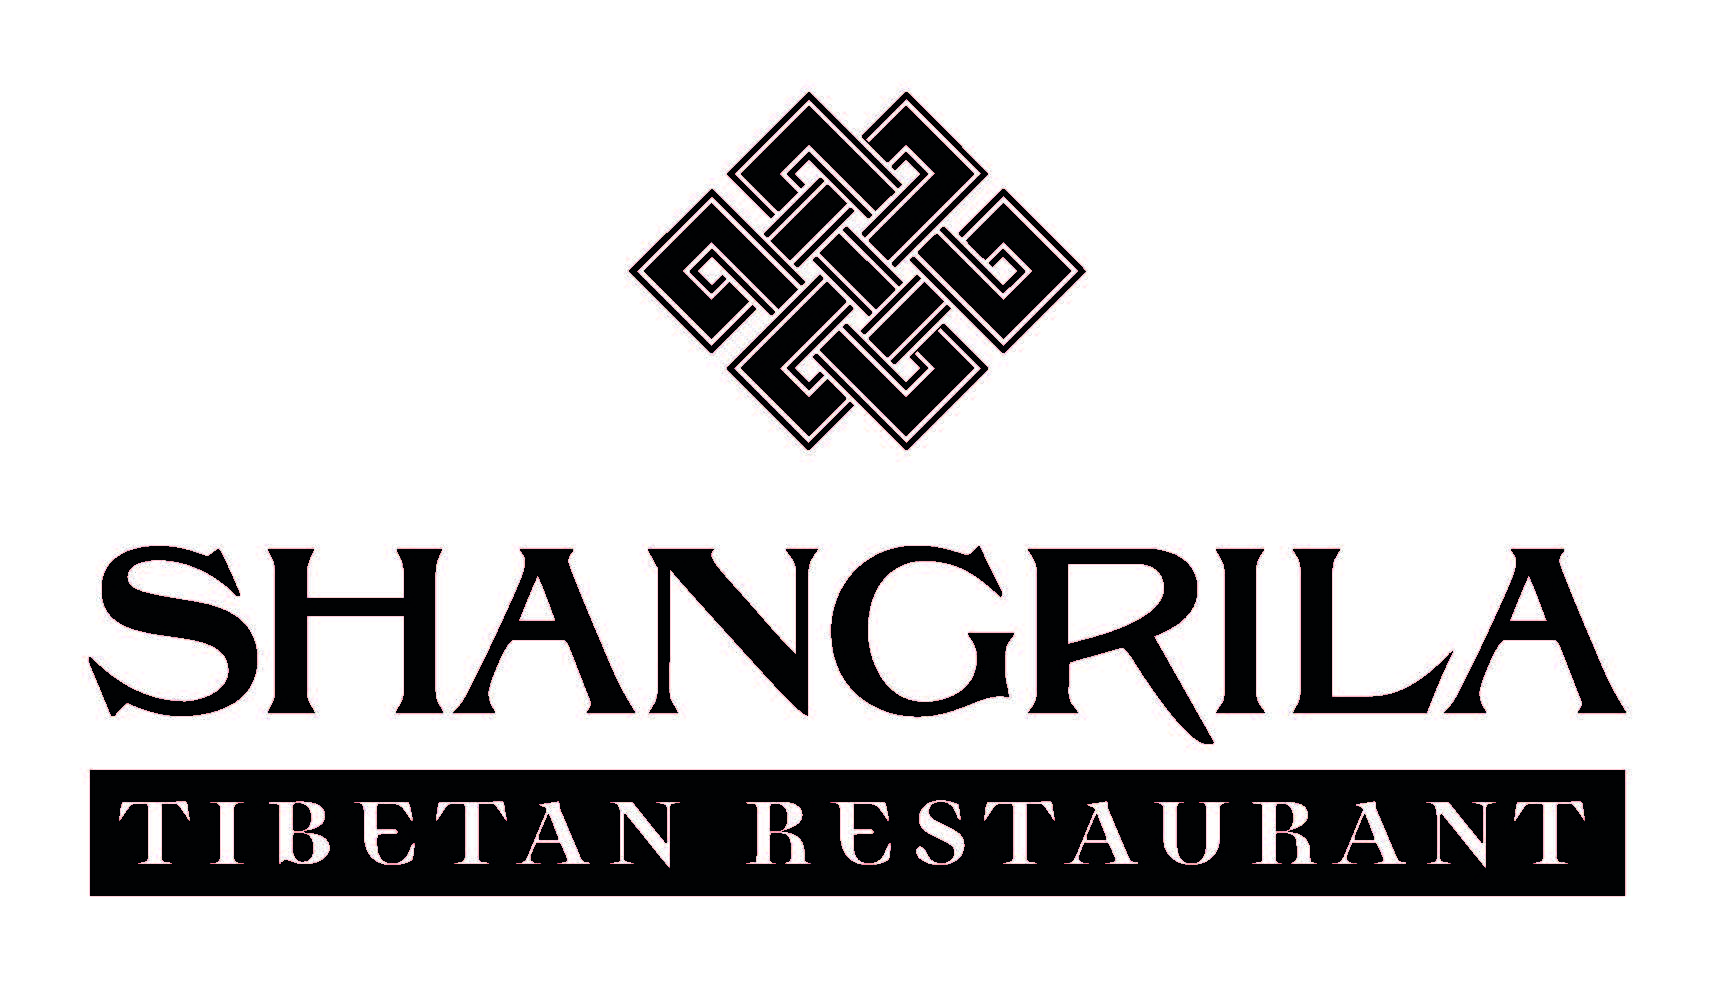 Shangrila Tibet Restaurant